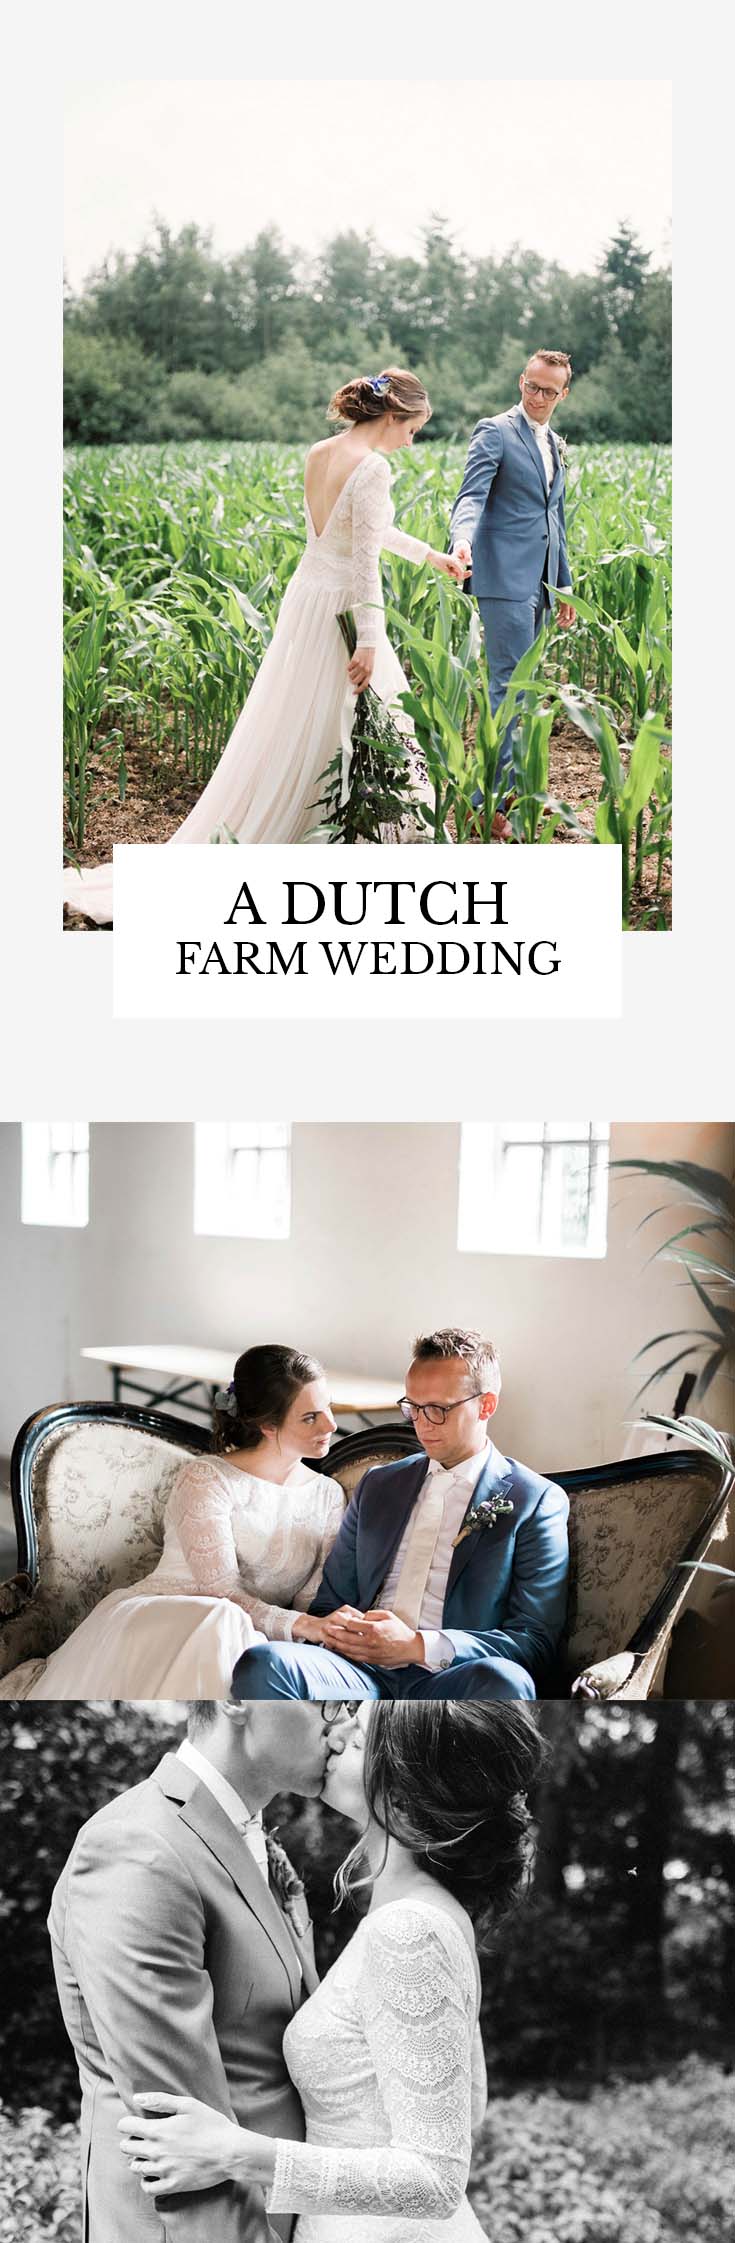 A Dutch farm wedding